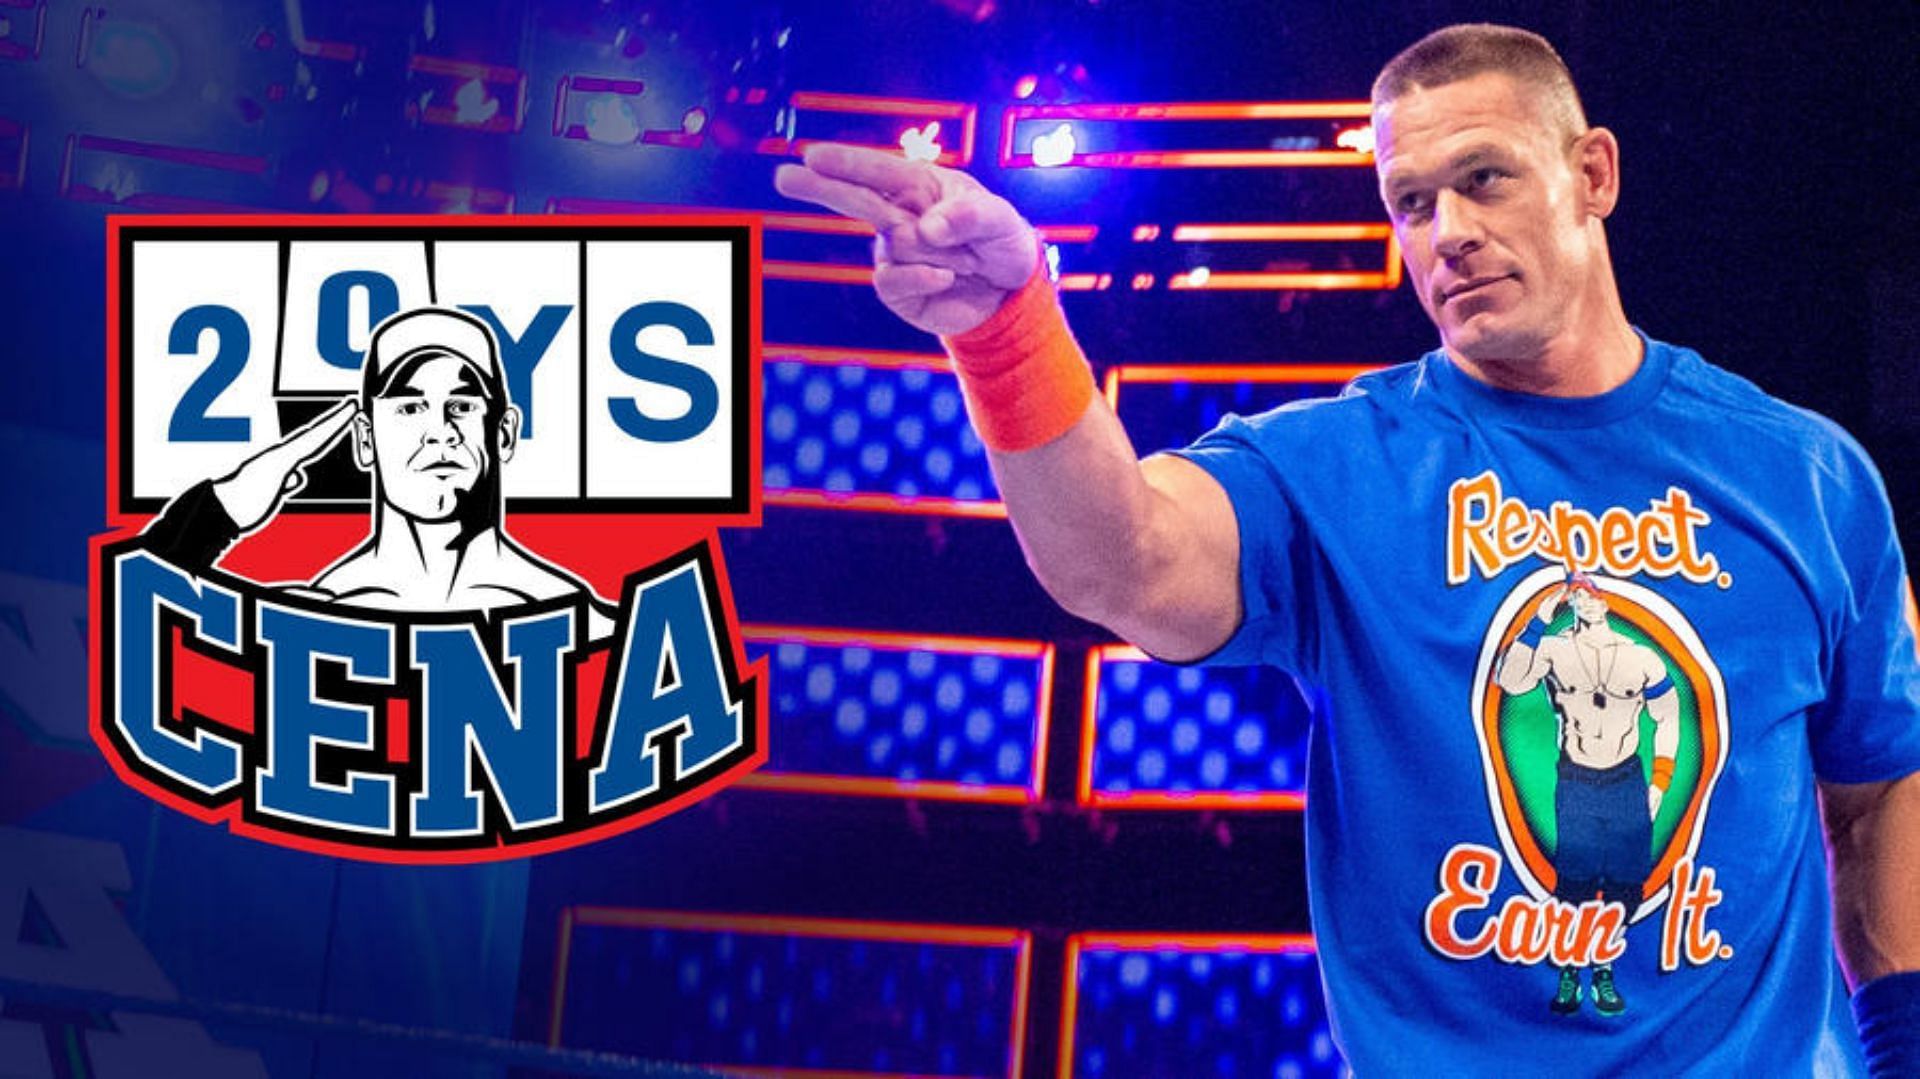 John Cena will celebrate 20 years in WWE tonight on RAW